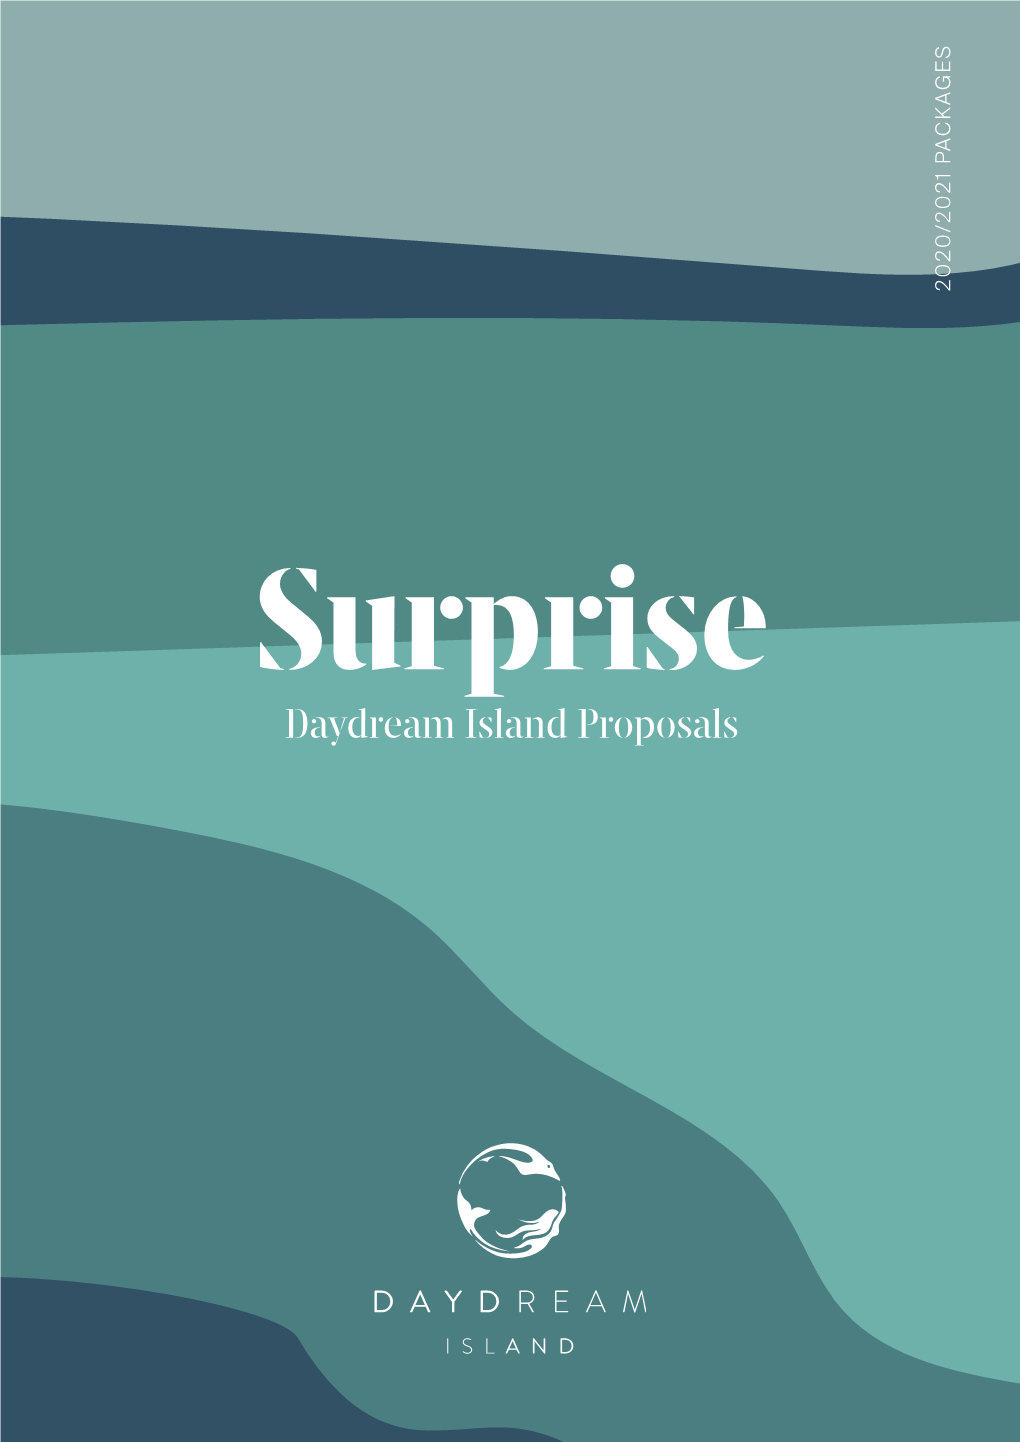 Daydream Island Proposals